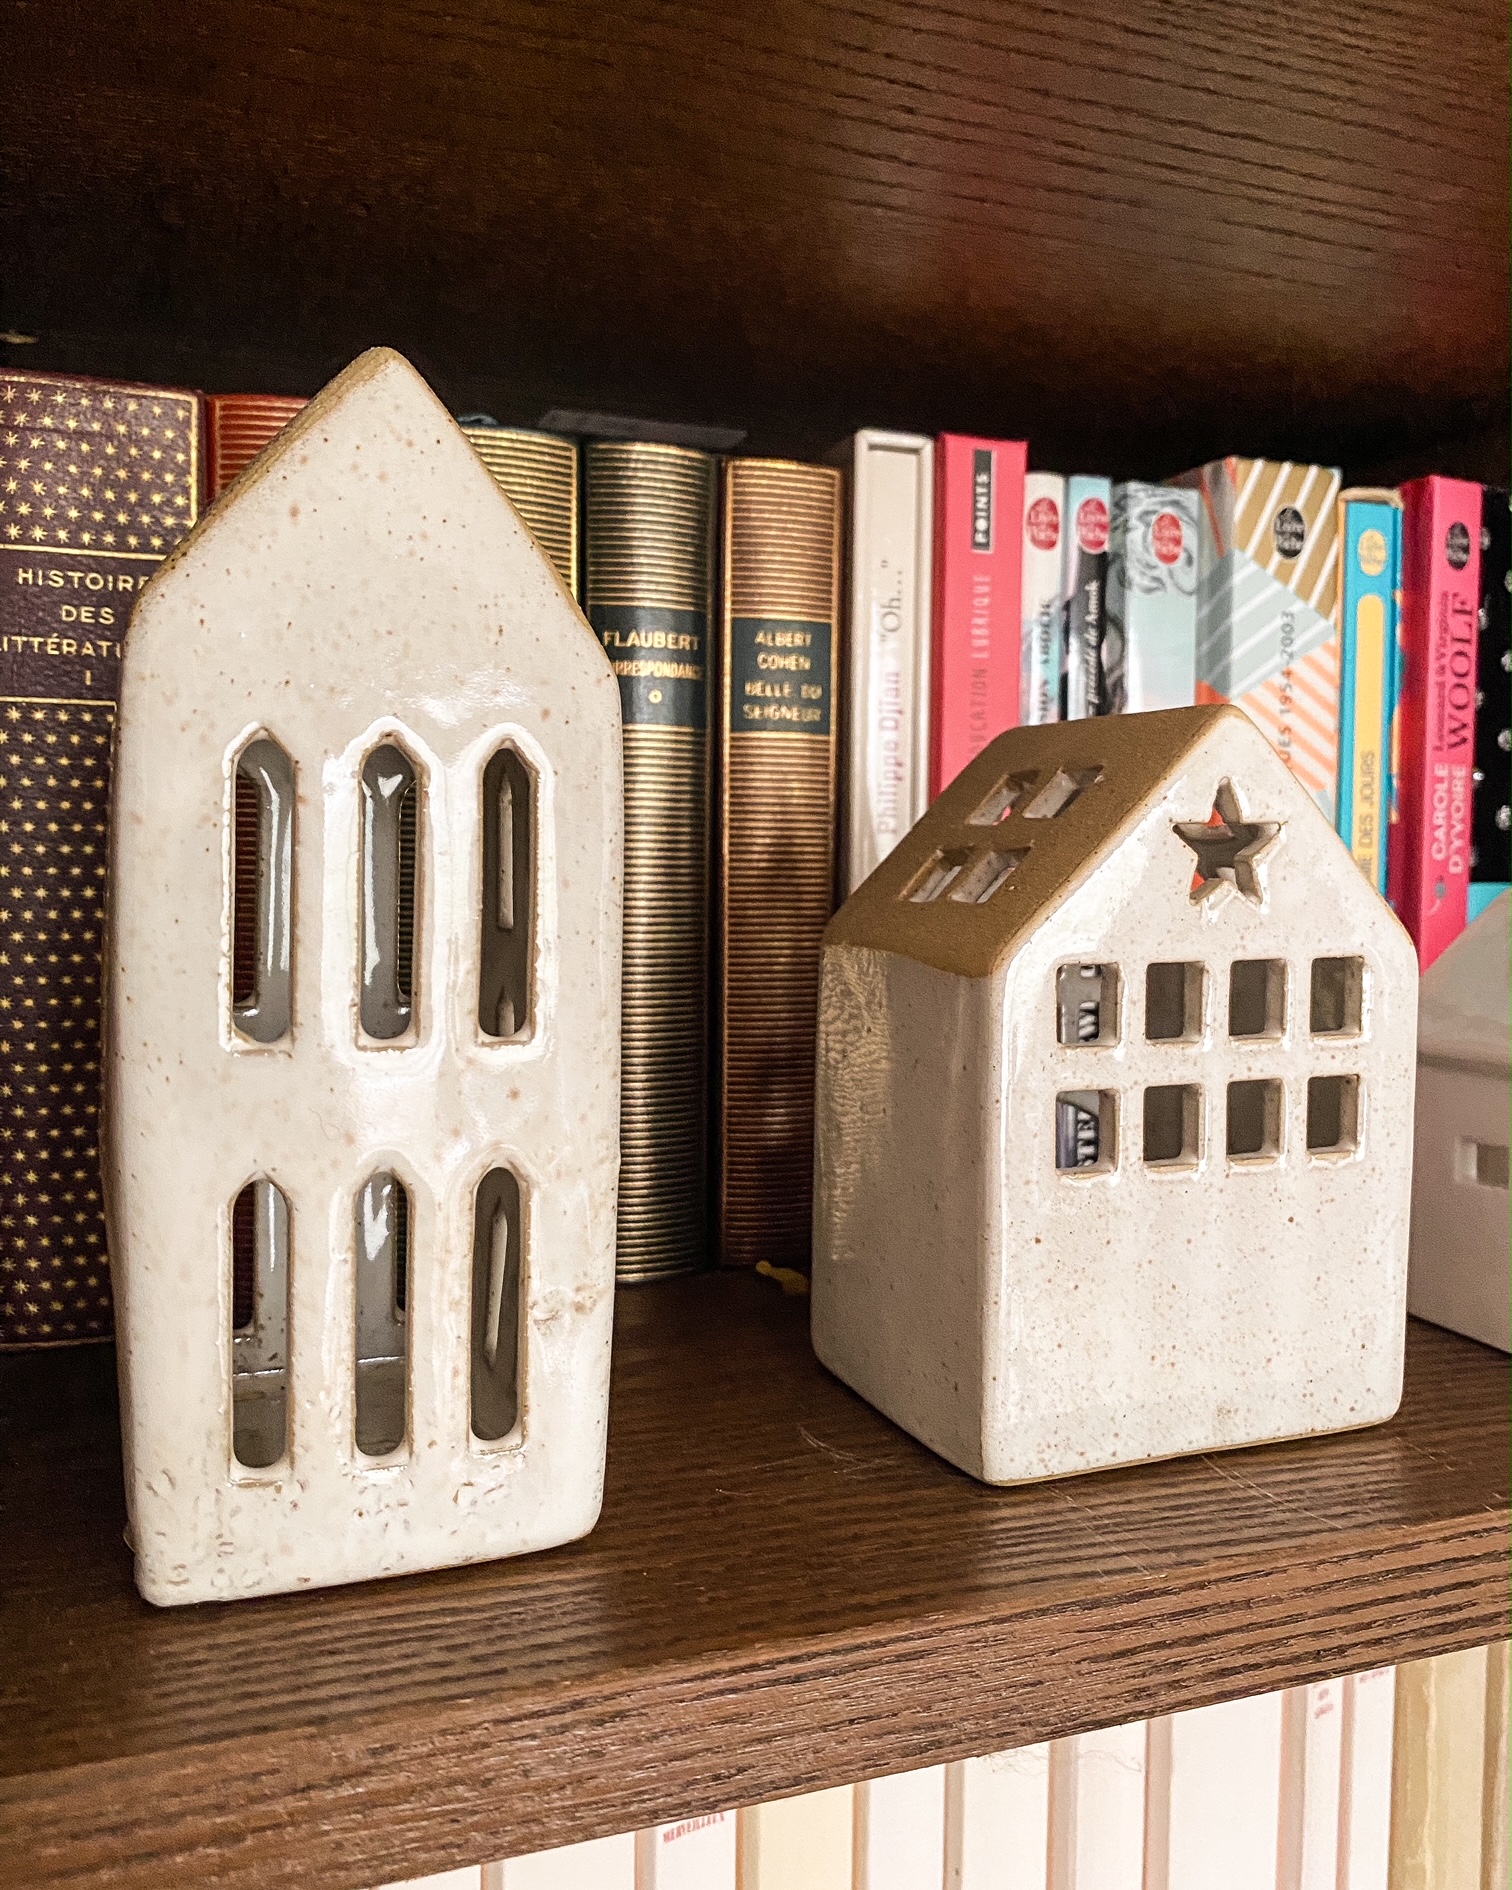 Deux petites maisons en céramique sur une étagère devant des livres